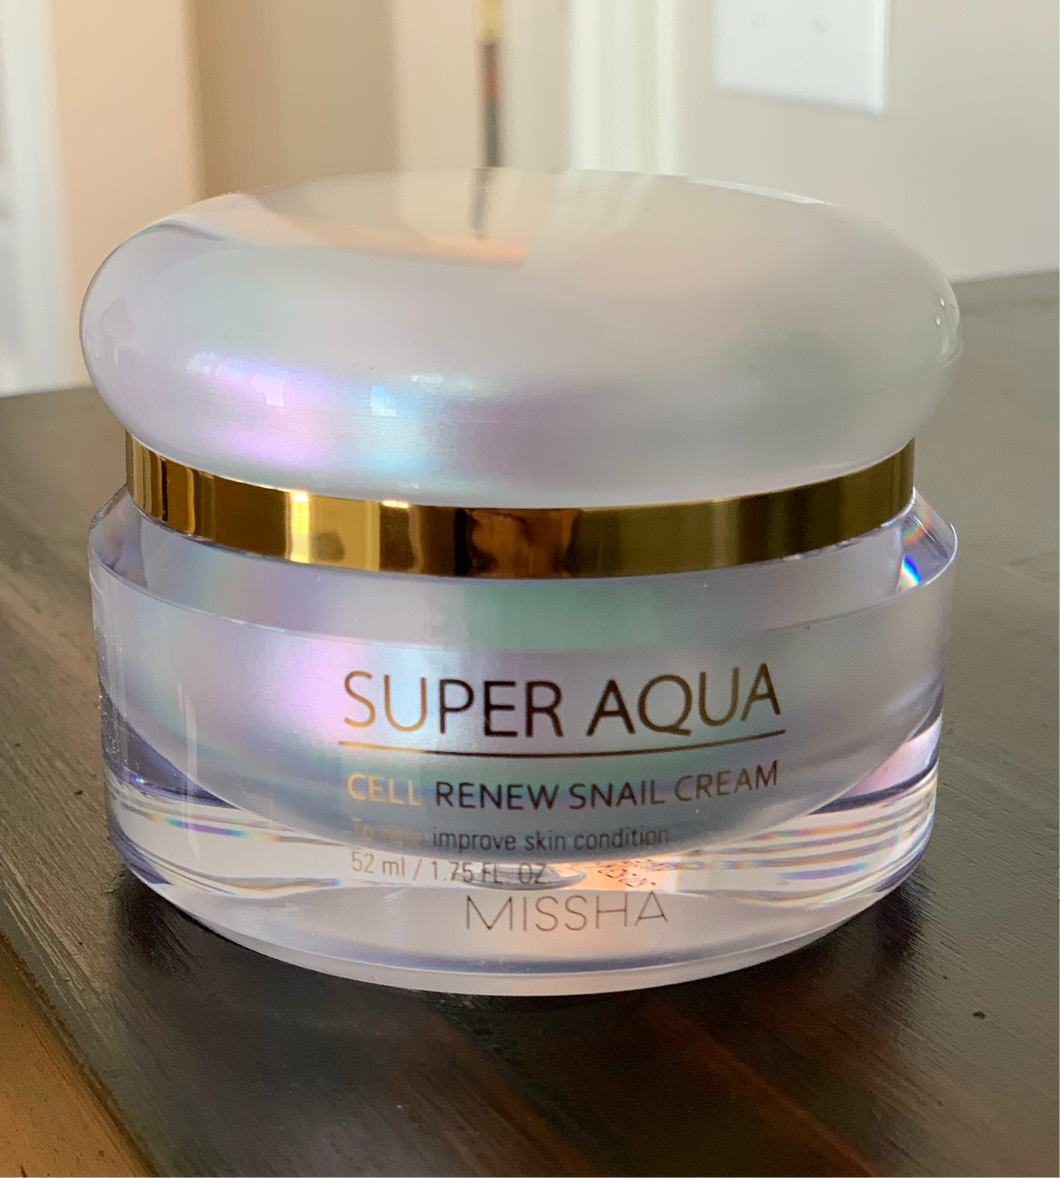 MISSHA “Super Aqua Snail Renewal Cream”